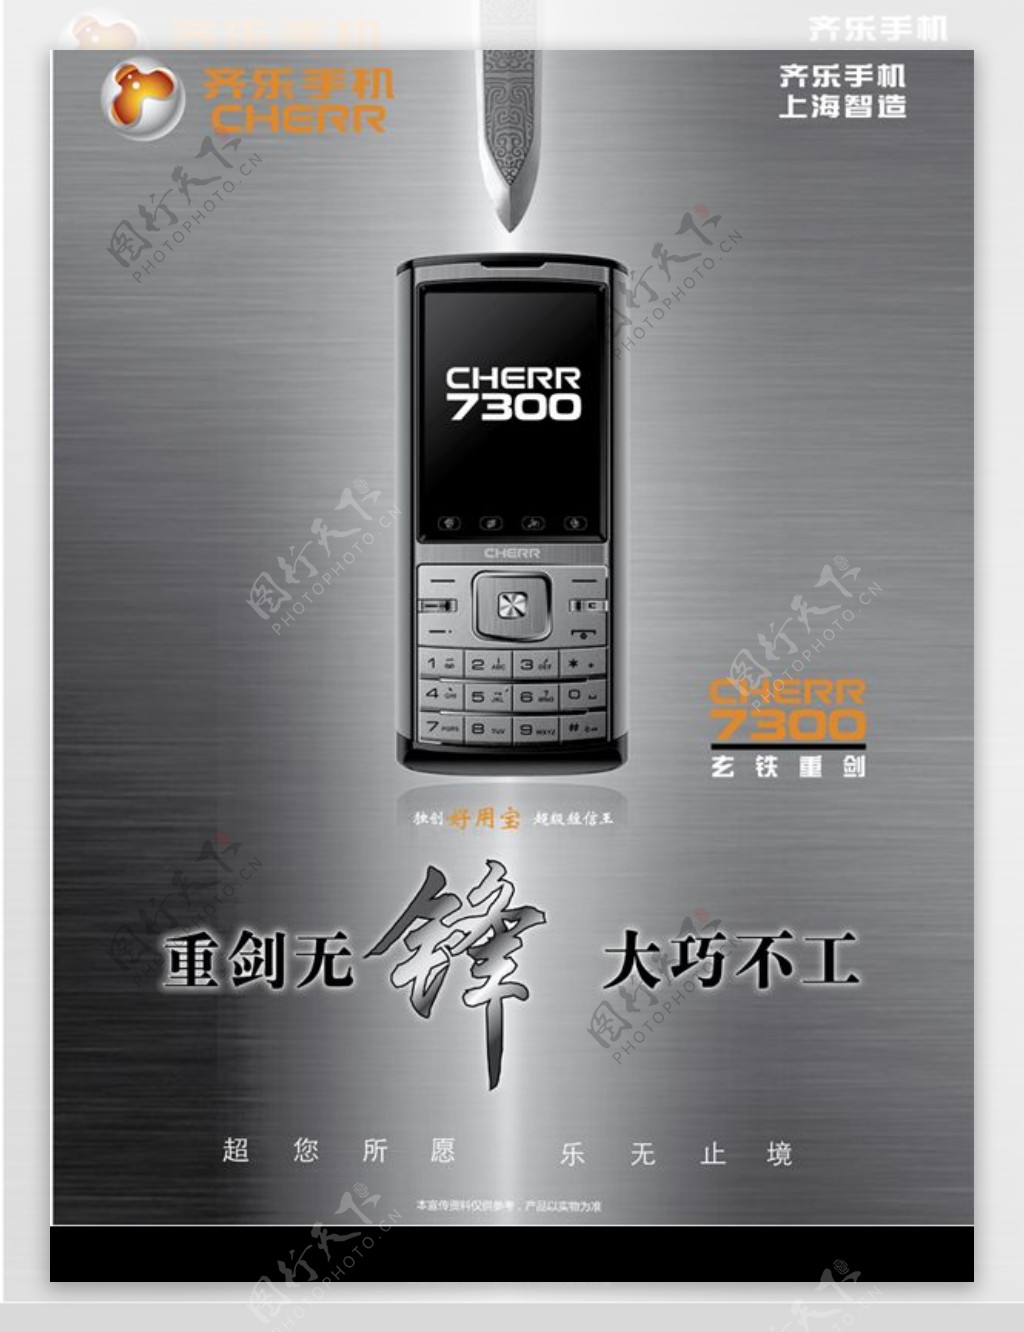 齐乐齐乐手机7300海报图片